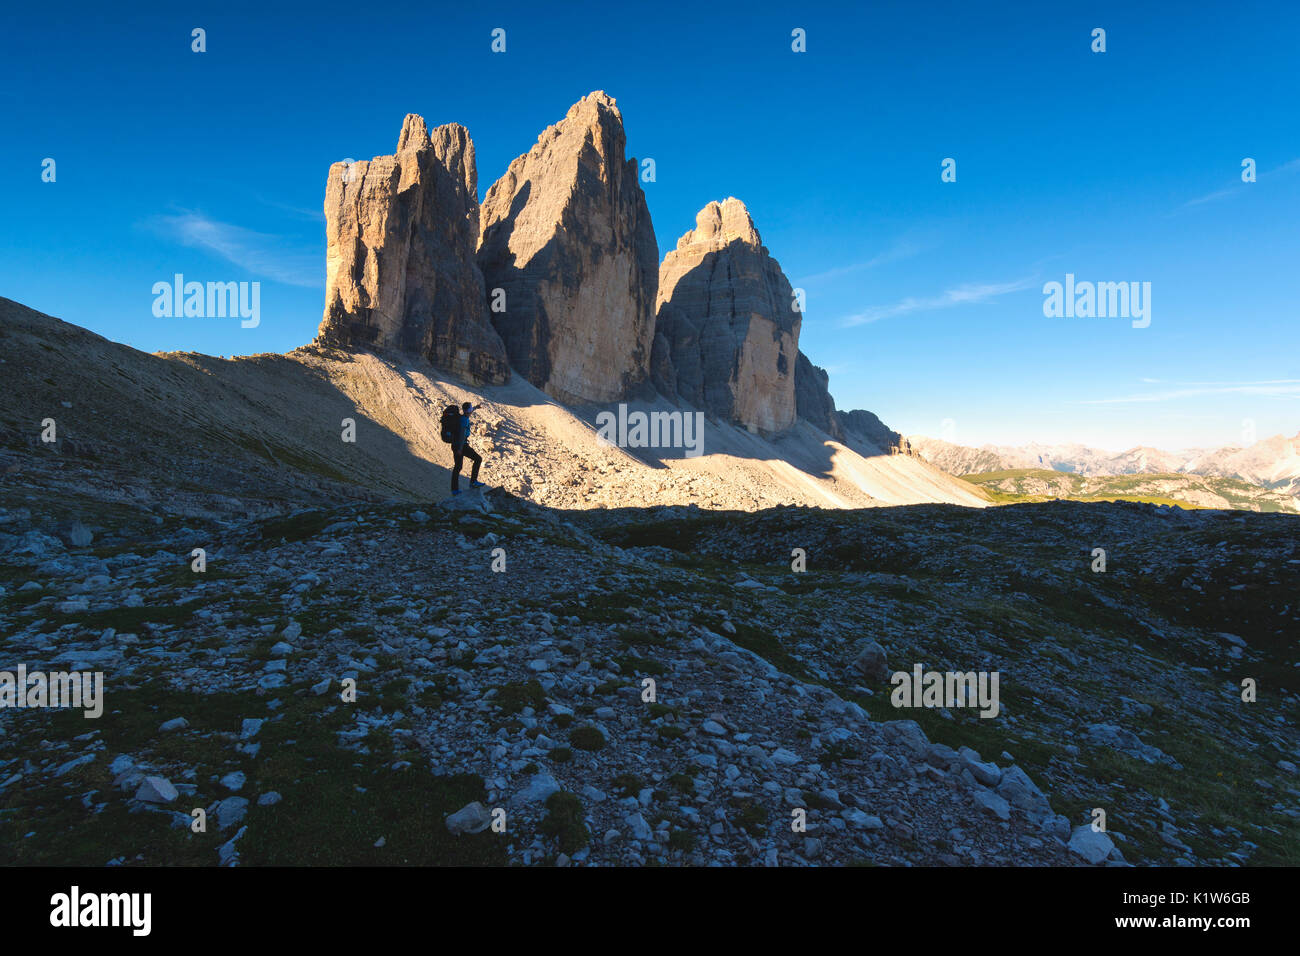 Hiker and the three peaks of Lavaredo, Bolzano province, Trentino Alto Adige, Italy. Stock Photo